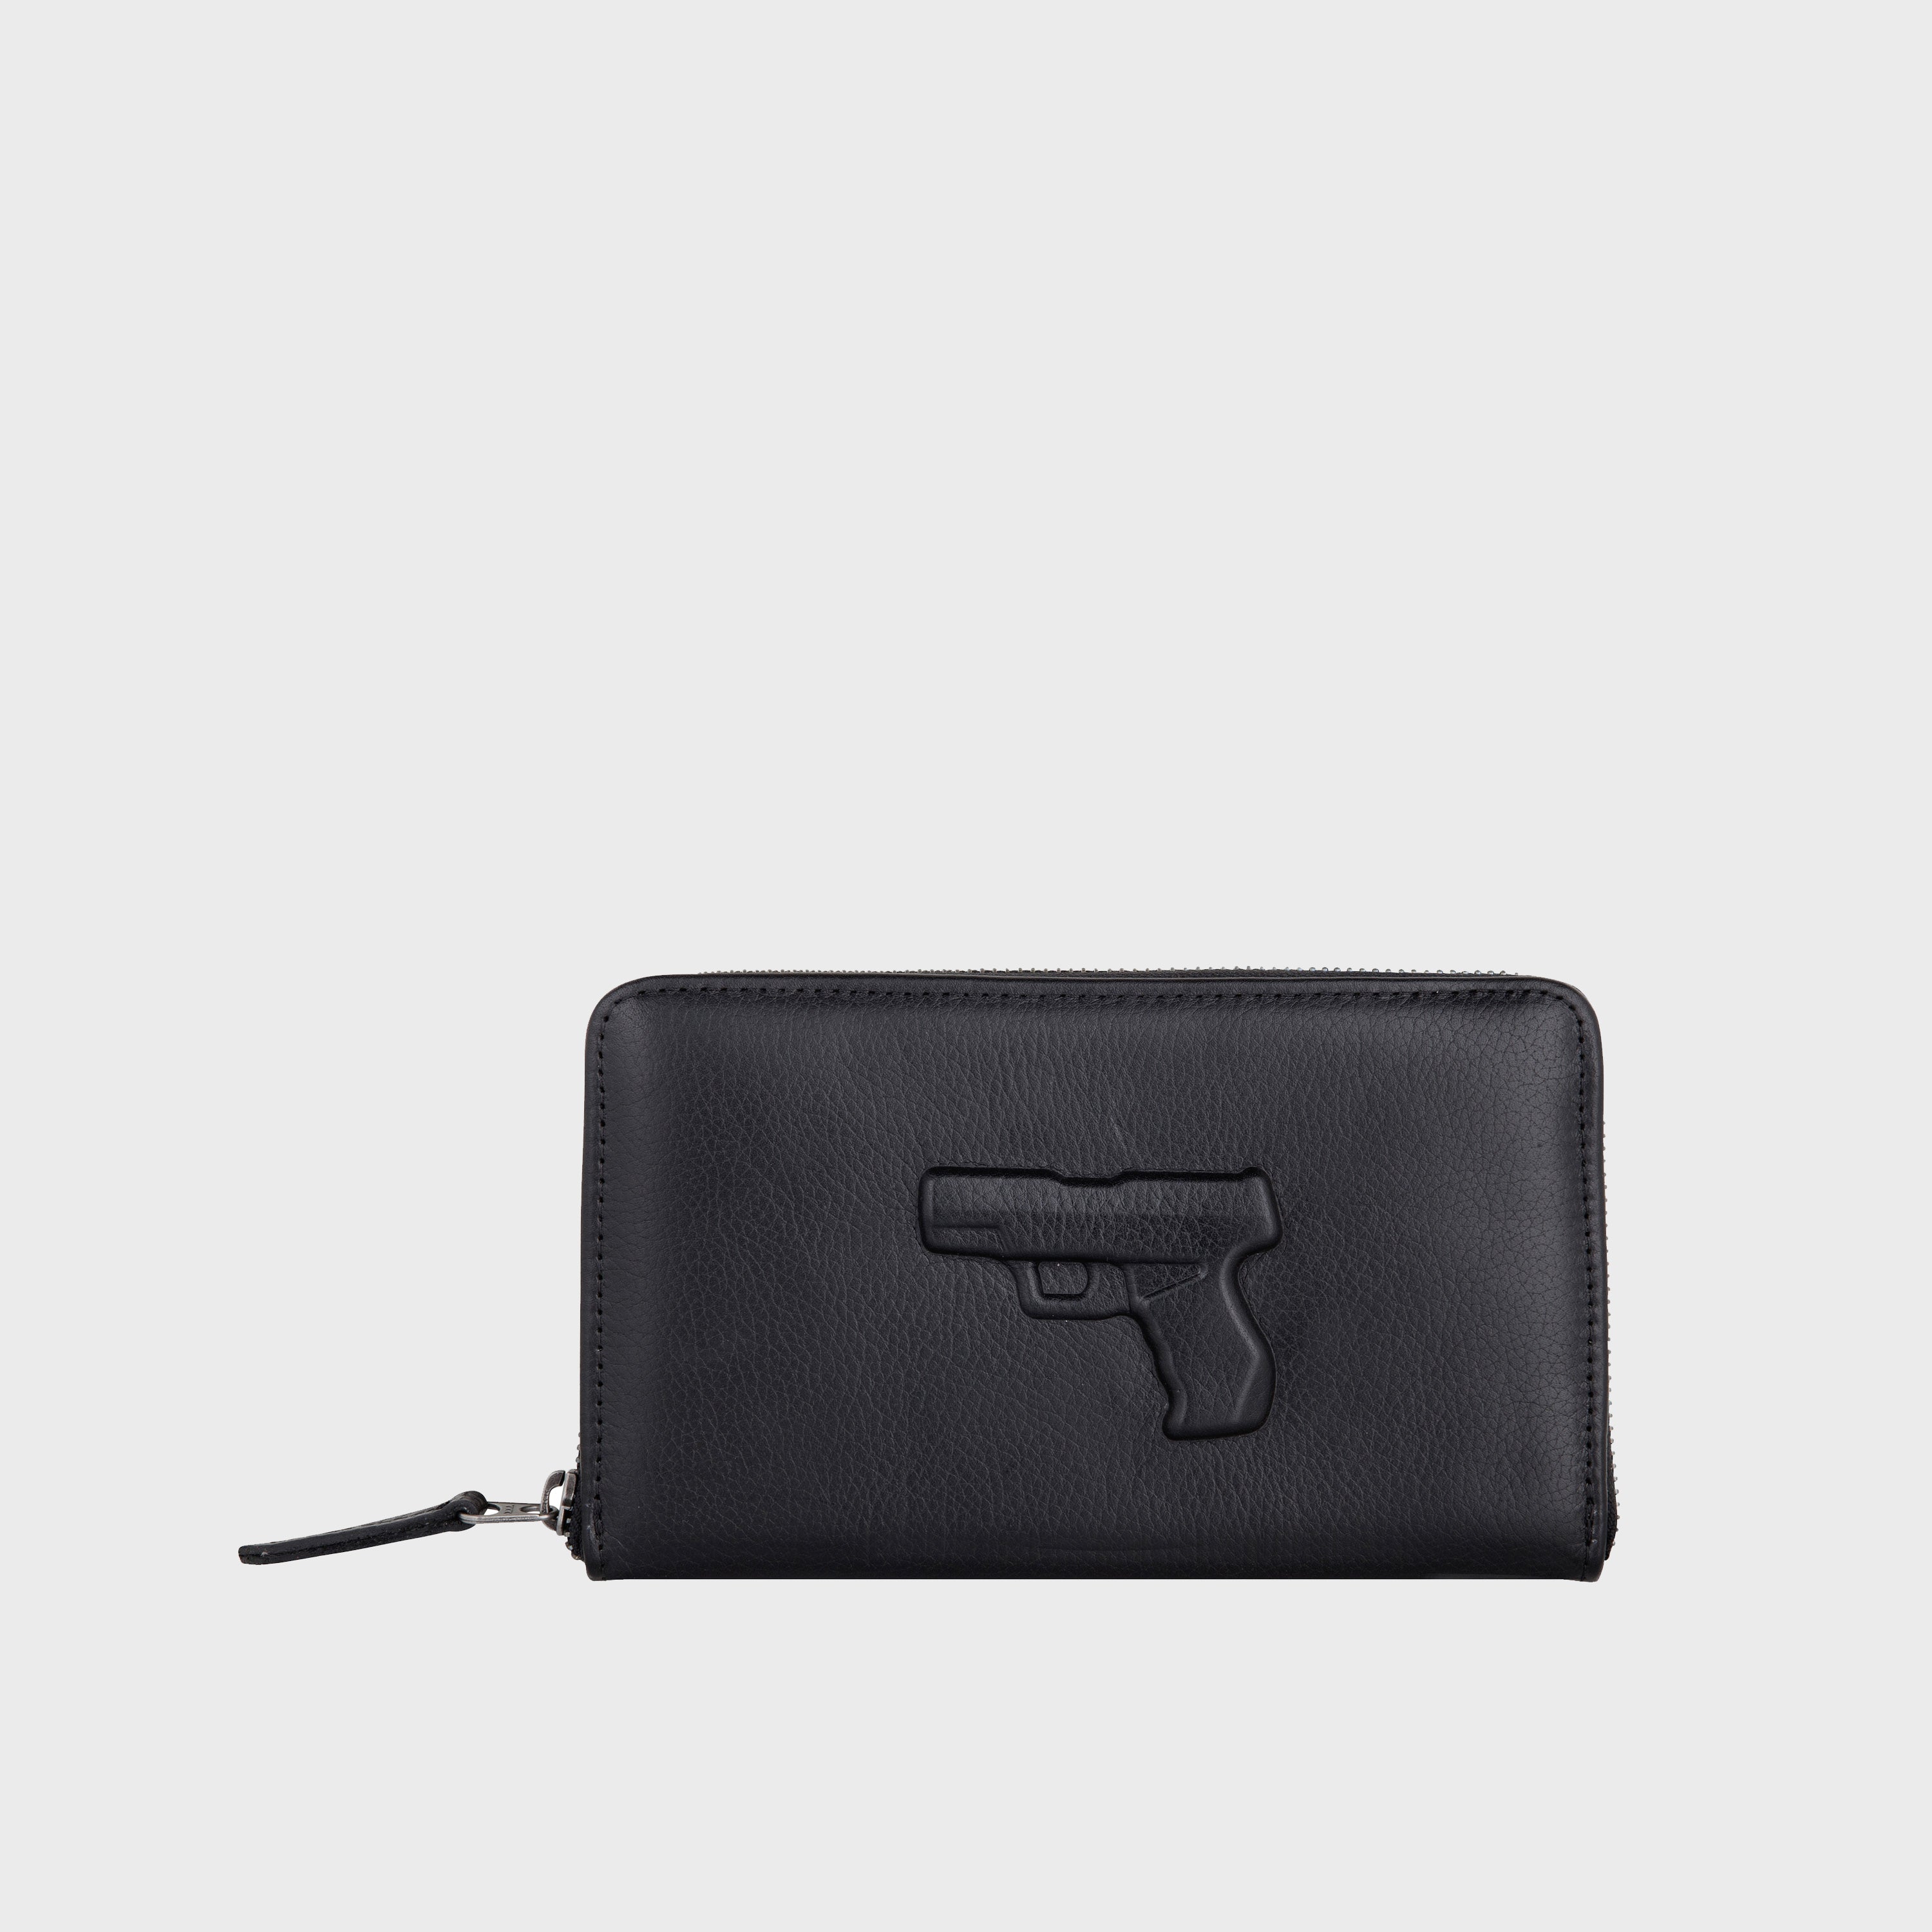 Zipped Wallet Gun